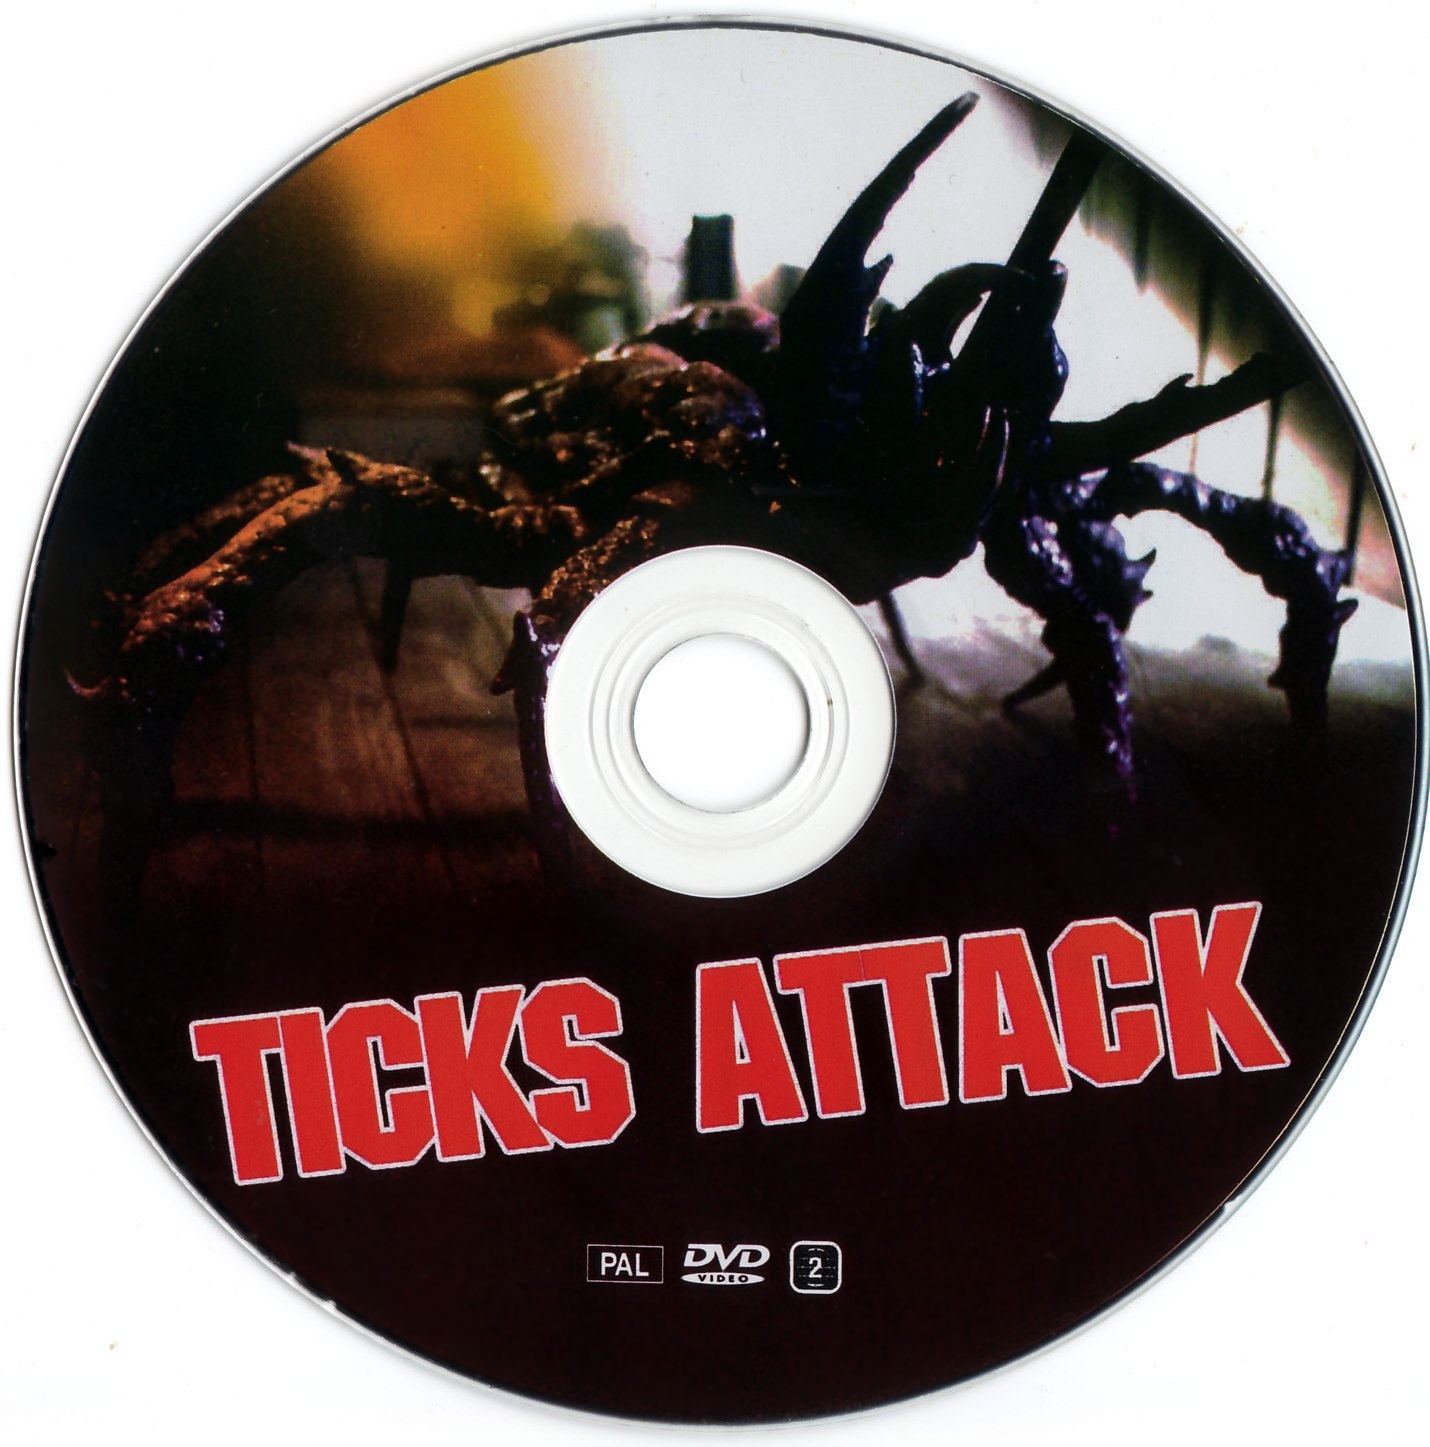 Ticks attack